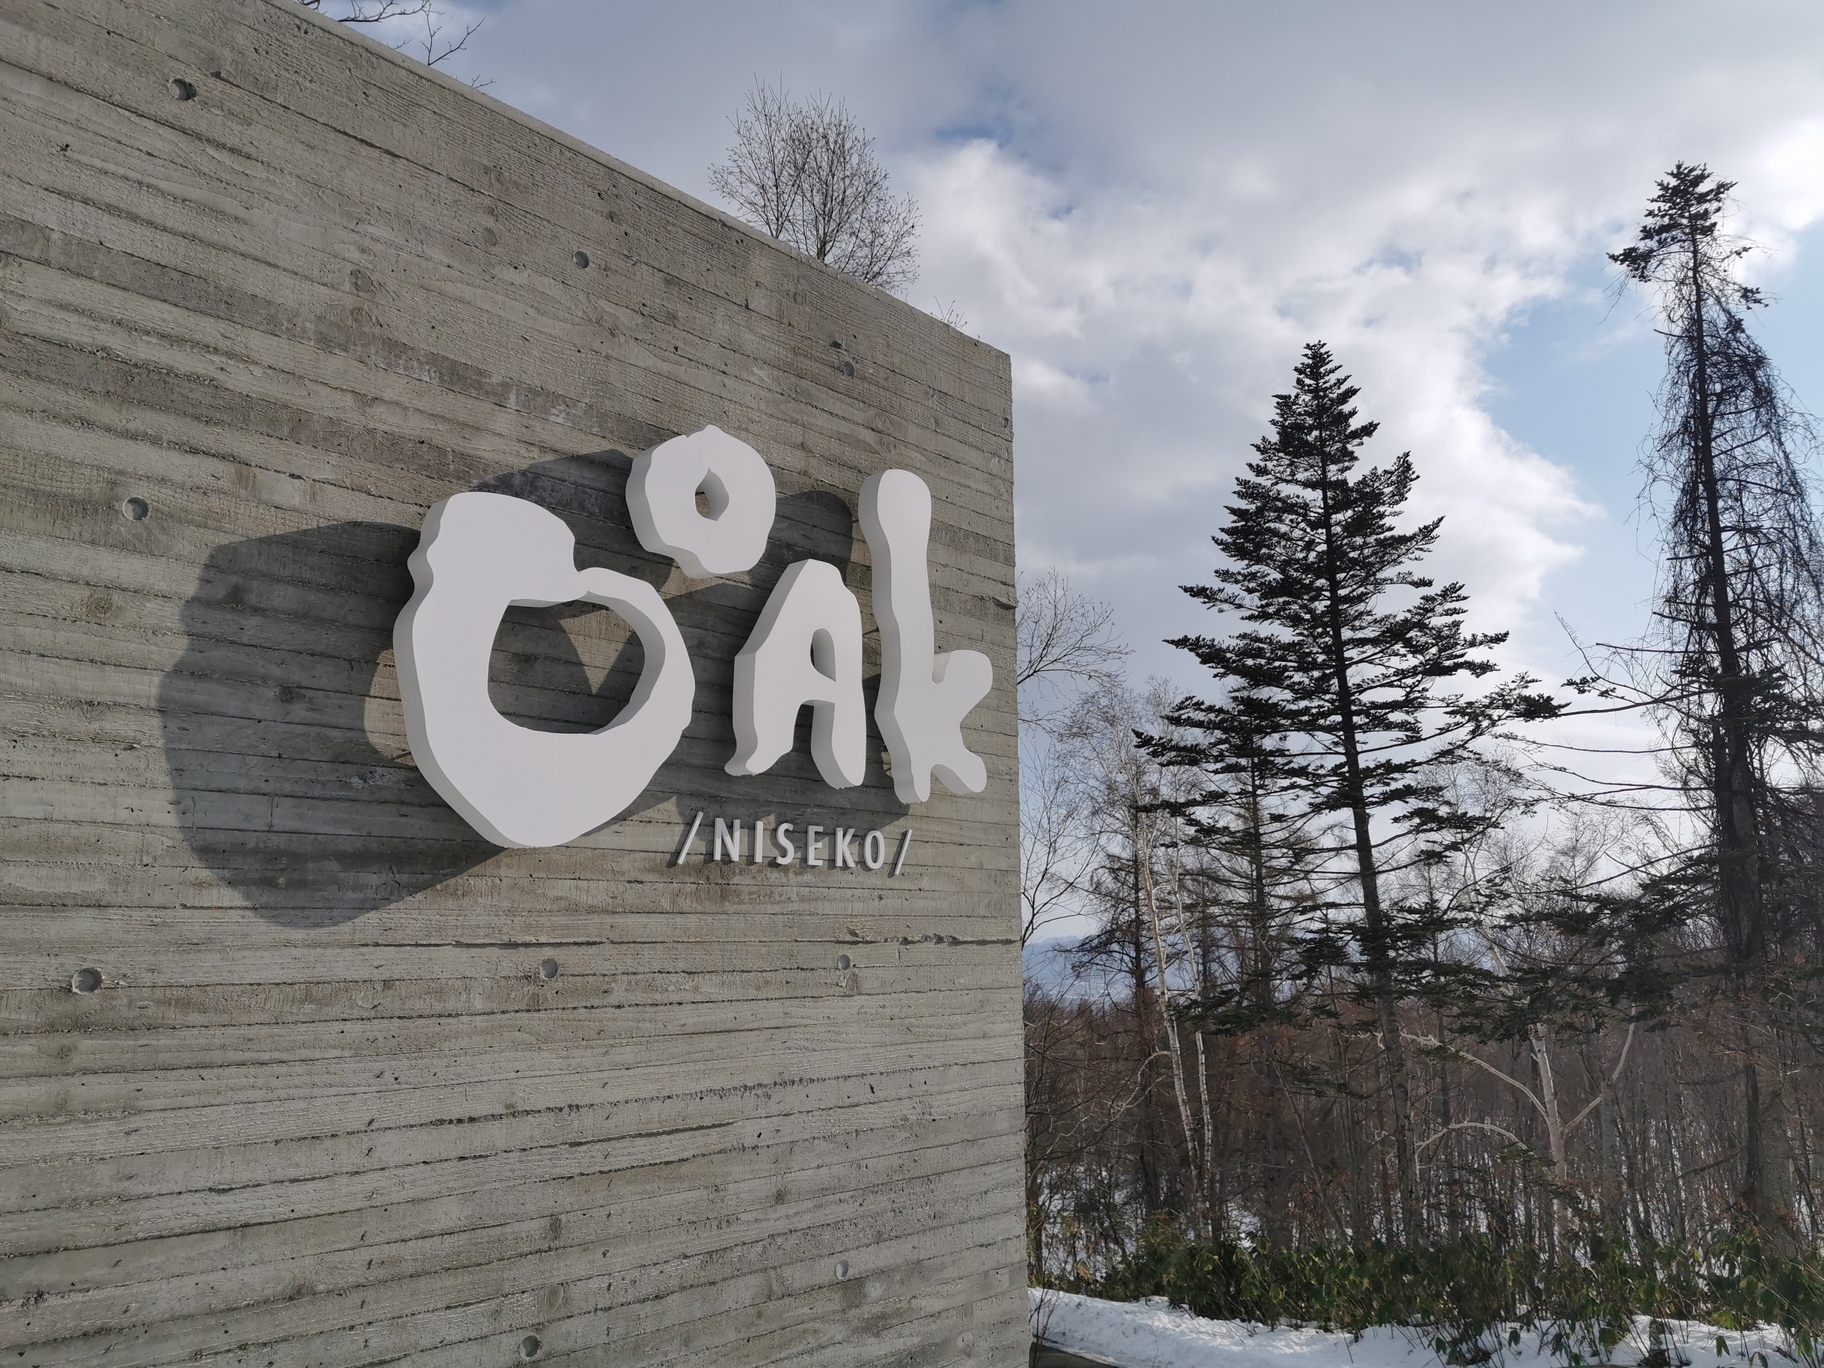 取名為 OOAK Niseko 的度假屋，蘊含「享受生活，享受設計」的精神。